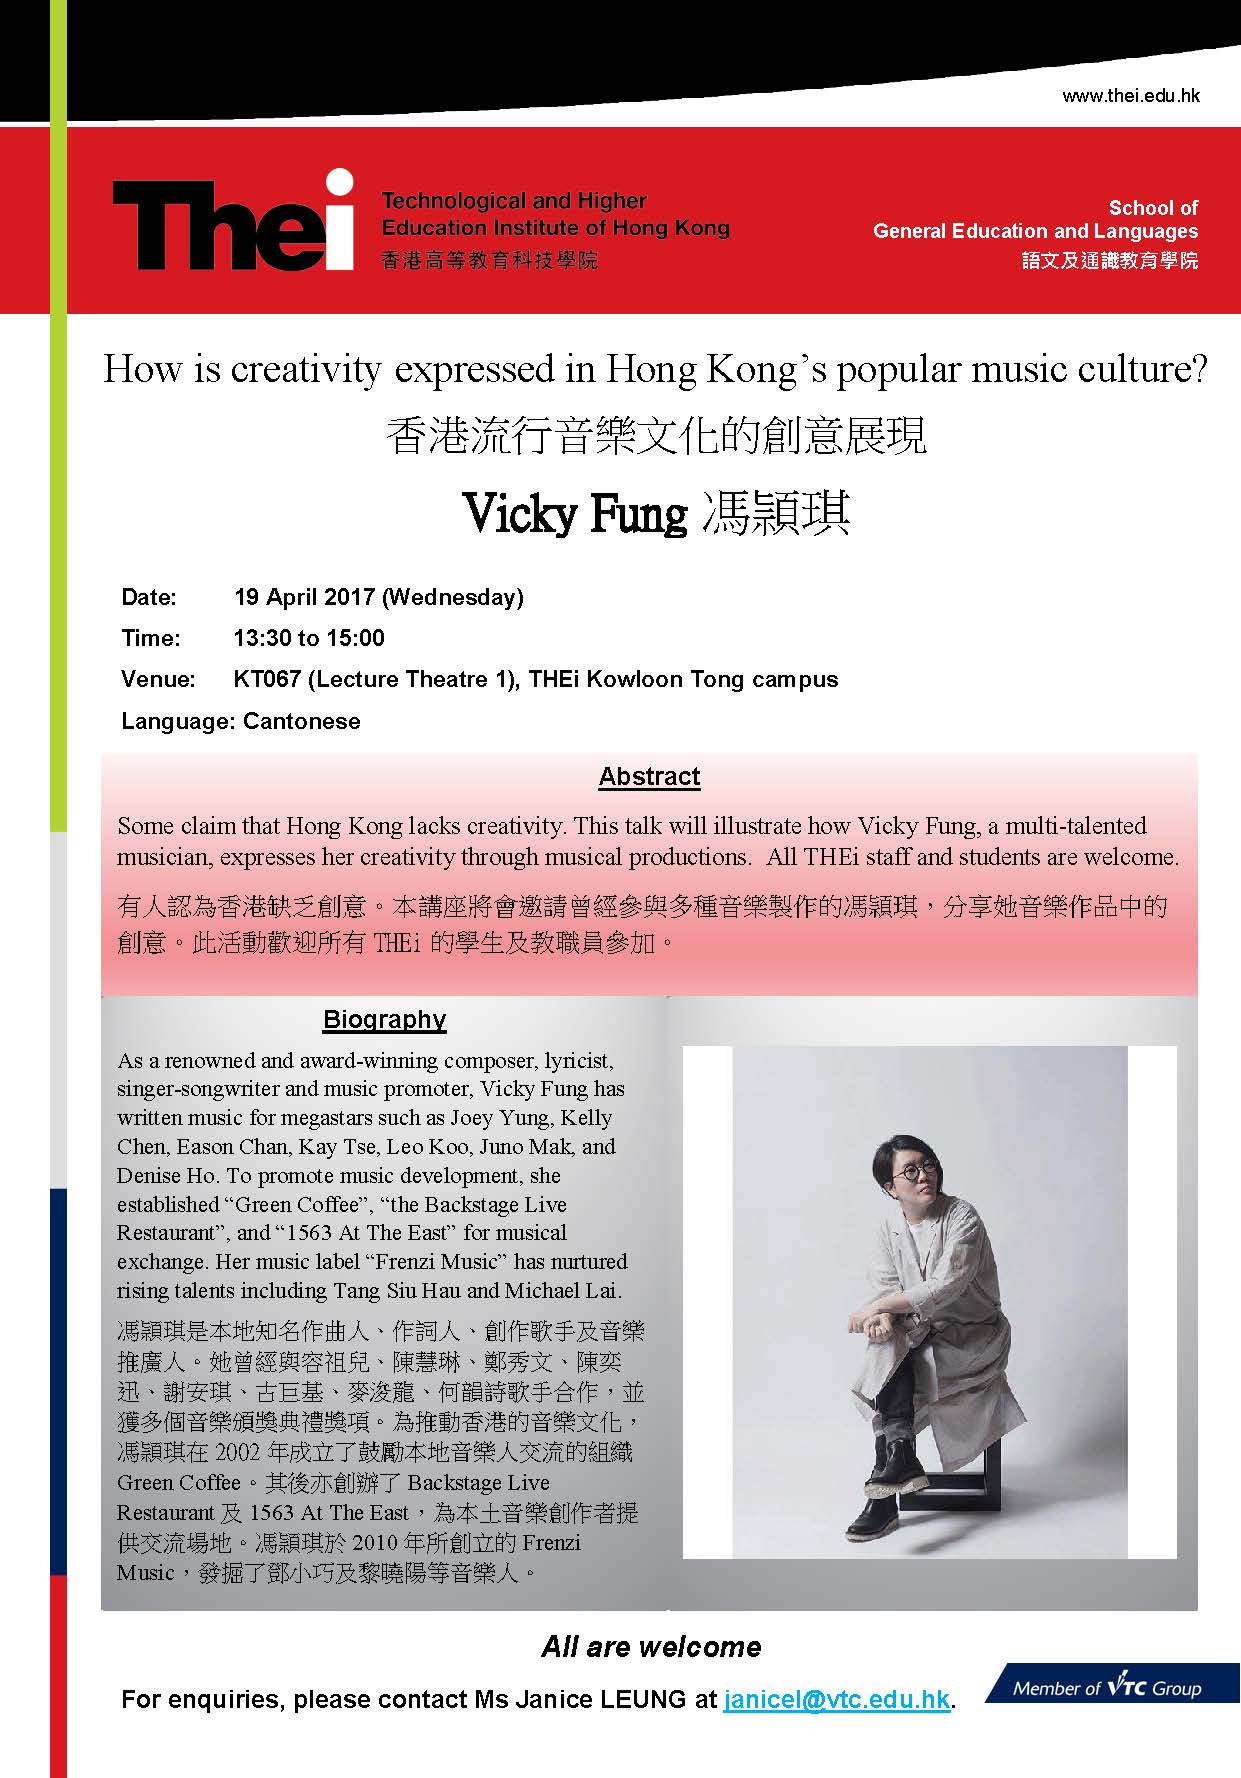 香港流行音乐文化的创意展现